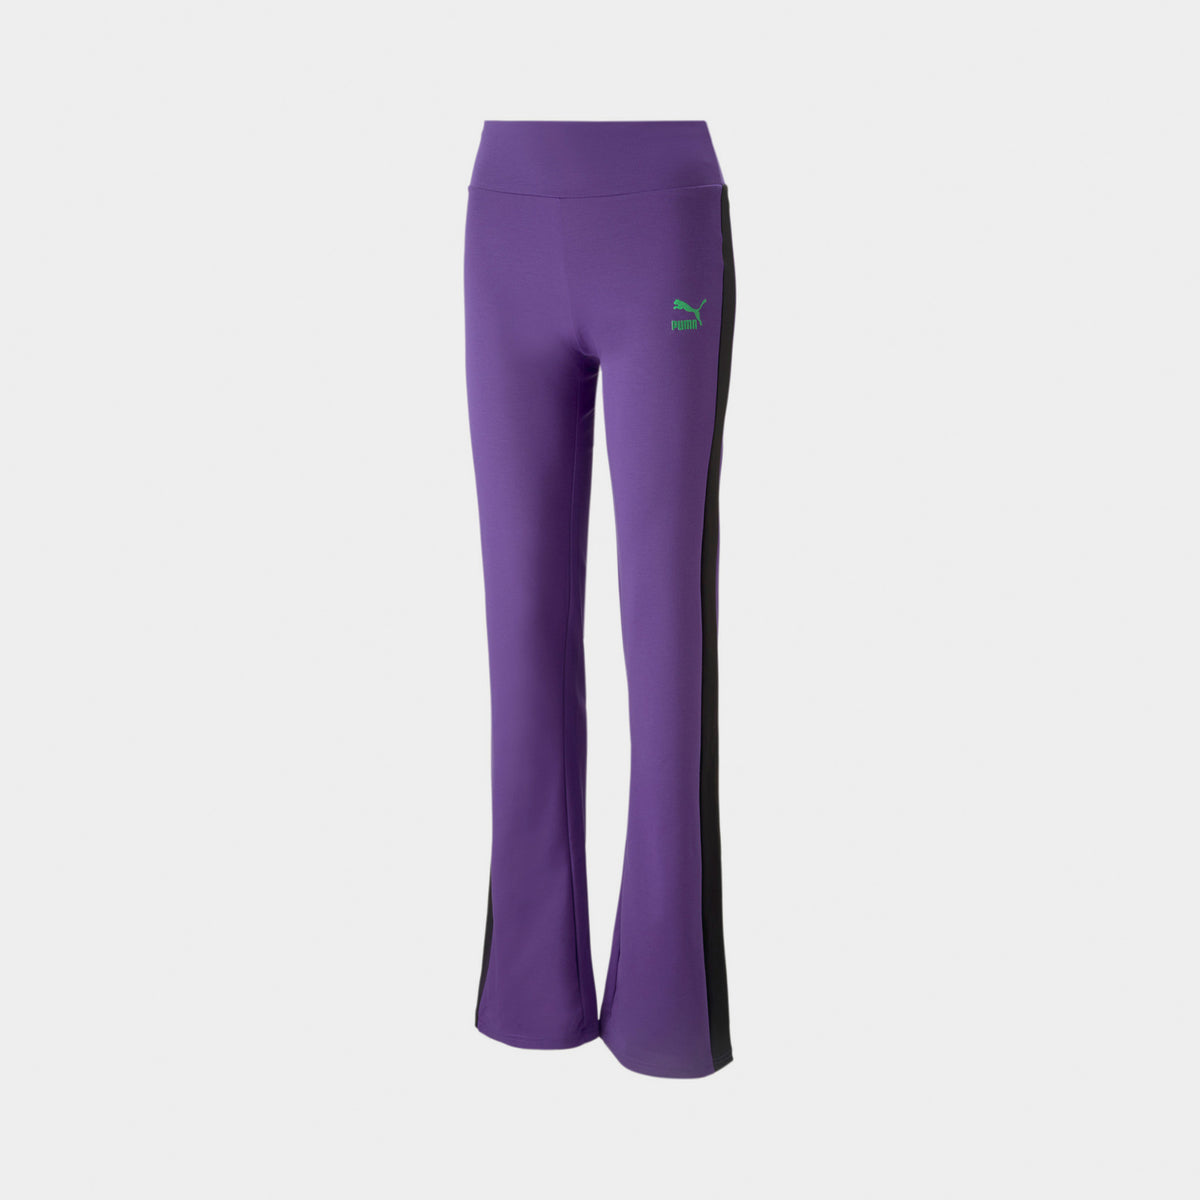 Puma x Dua Lipa Women’s T7 Pants Royal Purple / Puma Black | JD Sports ...